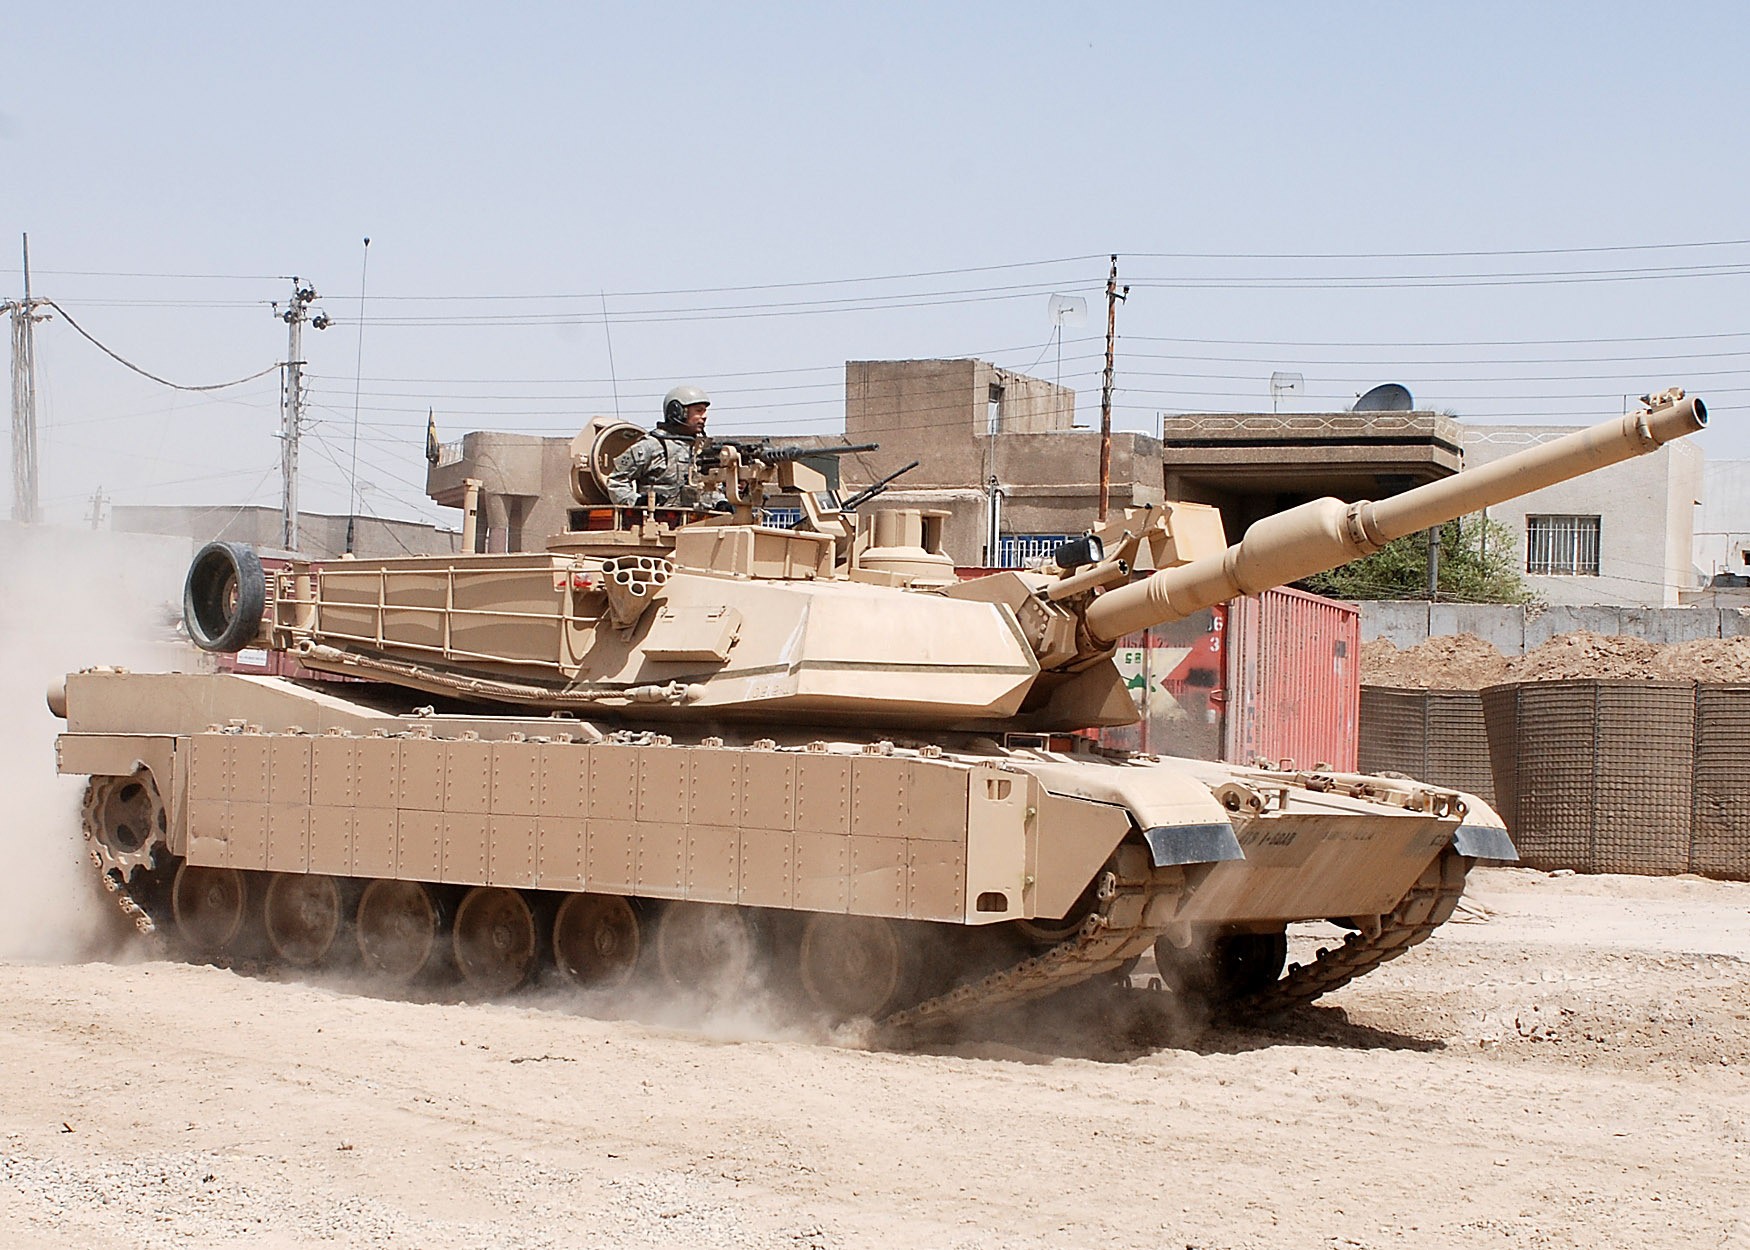 Dostosowanie czołgów Abrams do walk w obszarach zurbanizowanych w Iraku wymagało wprowadzenia szeregu modyfikacji. W perspektywie 20 lat charakter walk w obszarach zurbanizowanych może ulec ogromnym zmianom, z uwagi na proliferację nowoczesnych technologii. Nowe warunki wymuszą podjęcie przez US Army szeregu kroków, aby utrzymać zdolność do skutecznego wykonywania zadań. Fot. SSG Joseph Rivera Rebolledo/US DoD.